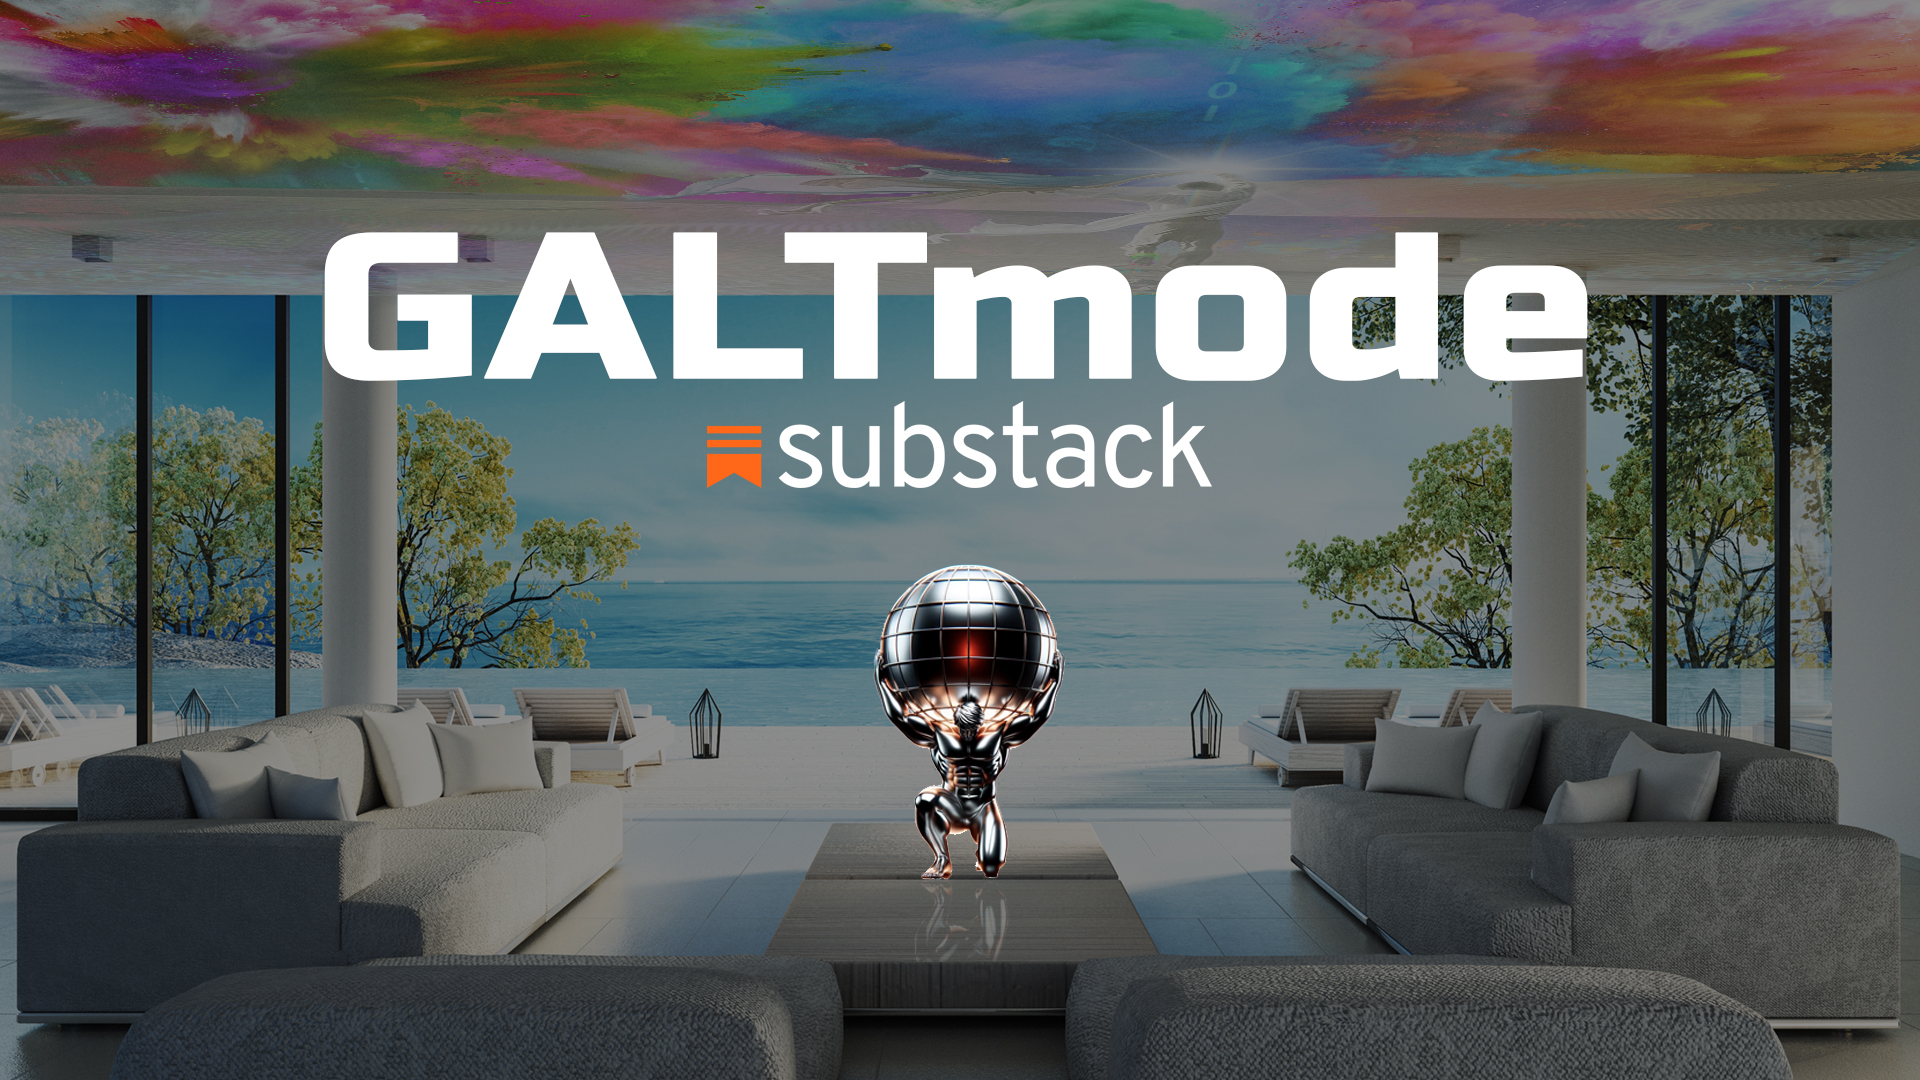 GALTmode substack Josh Galt